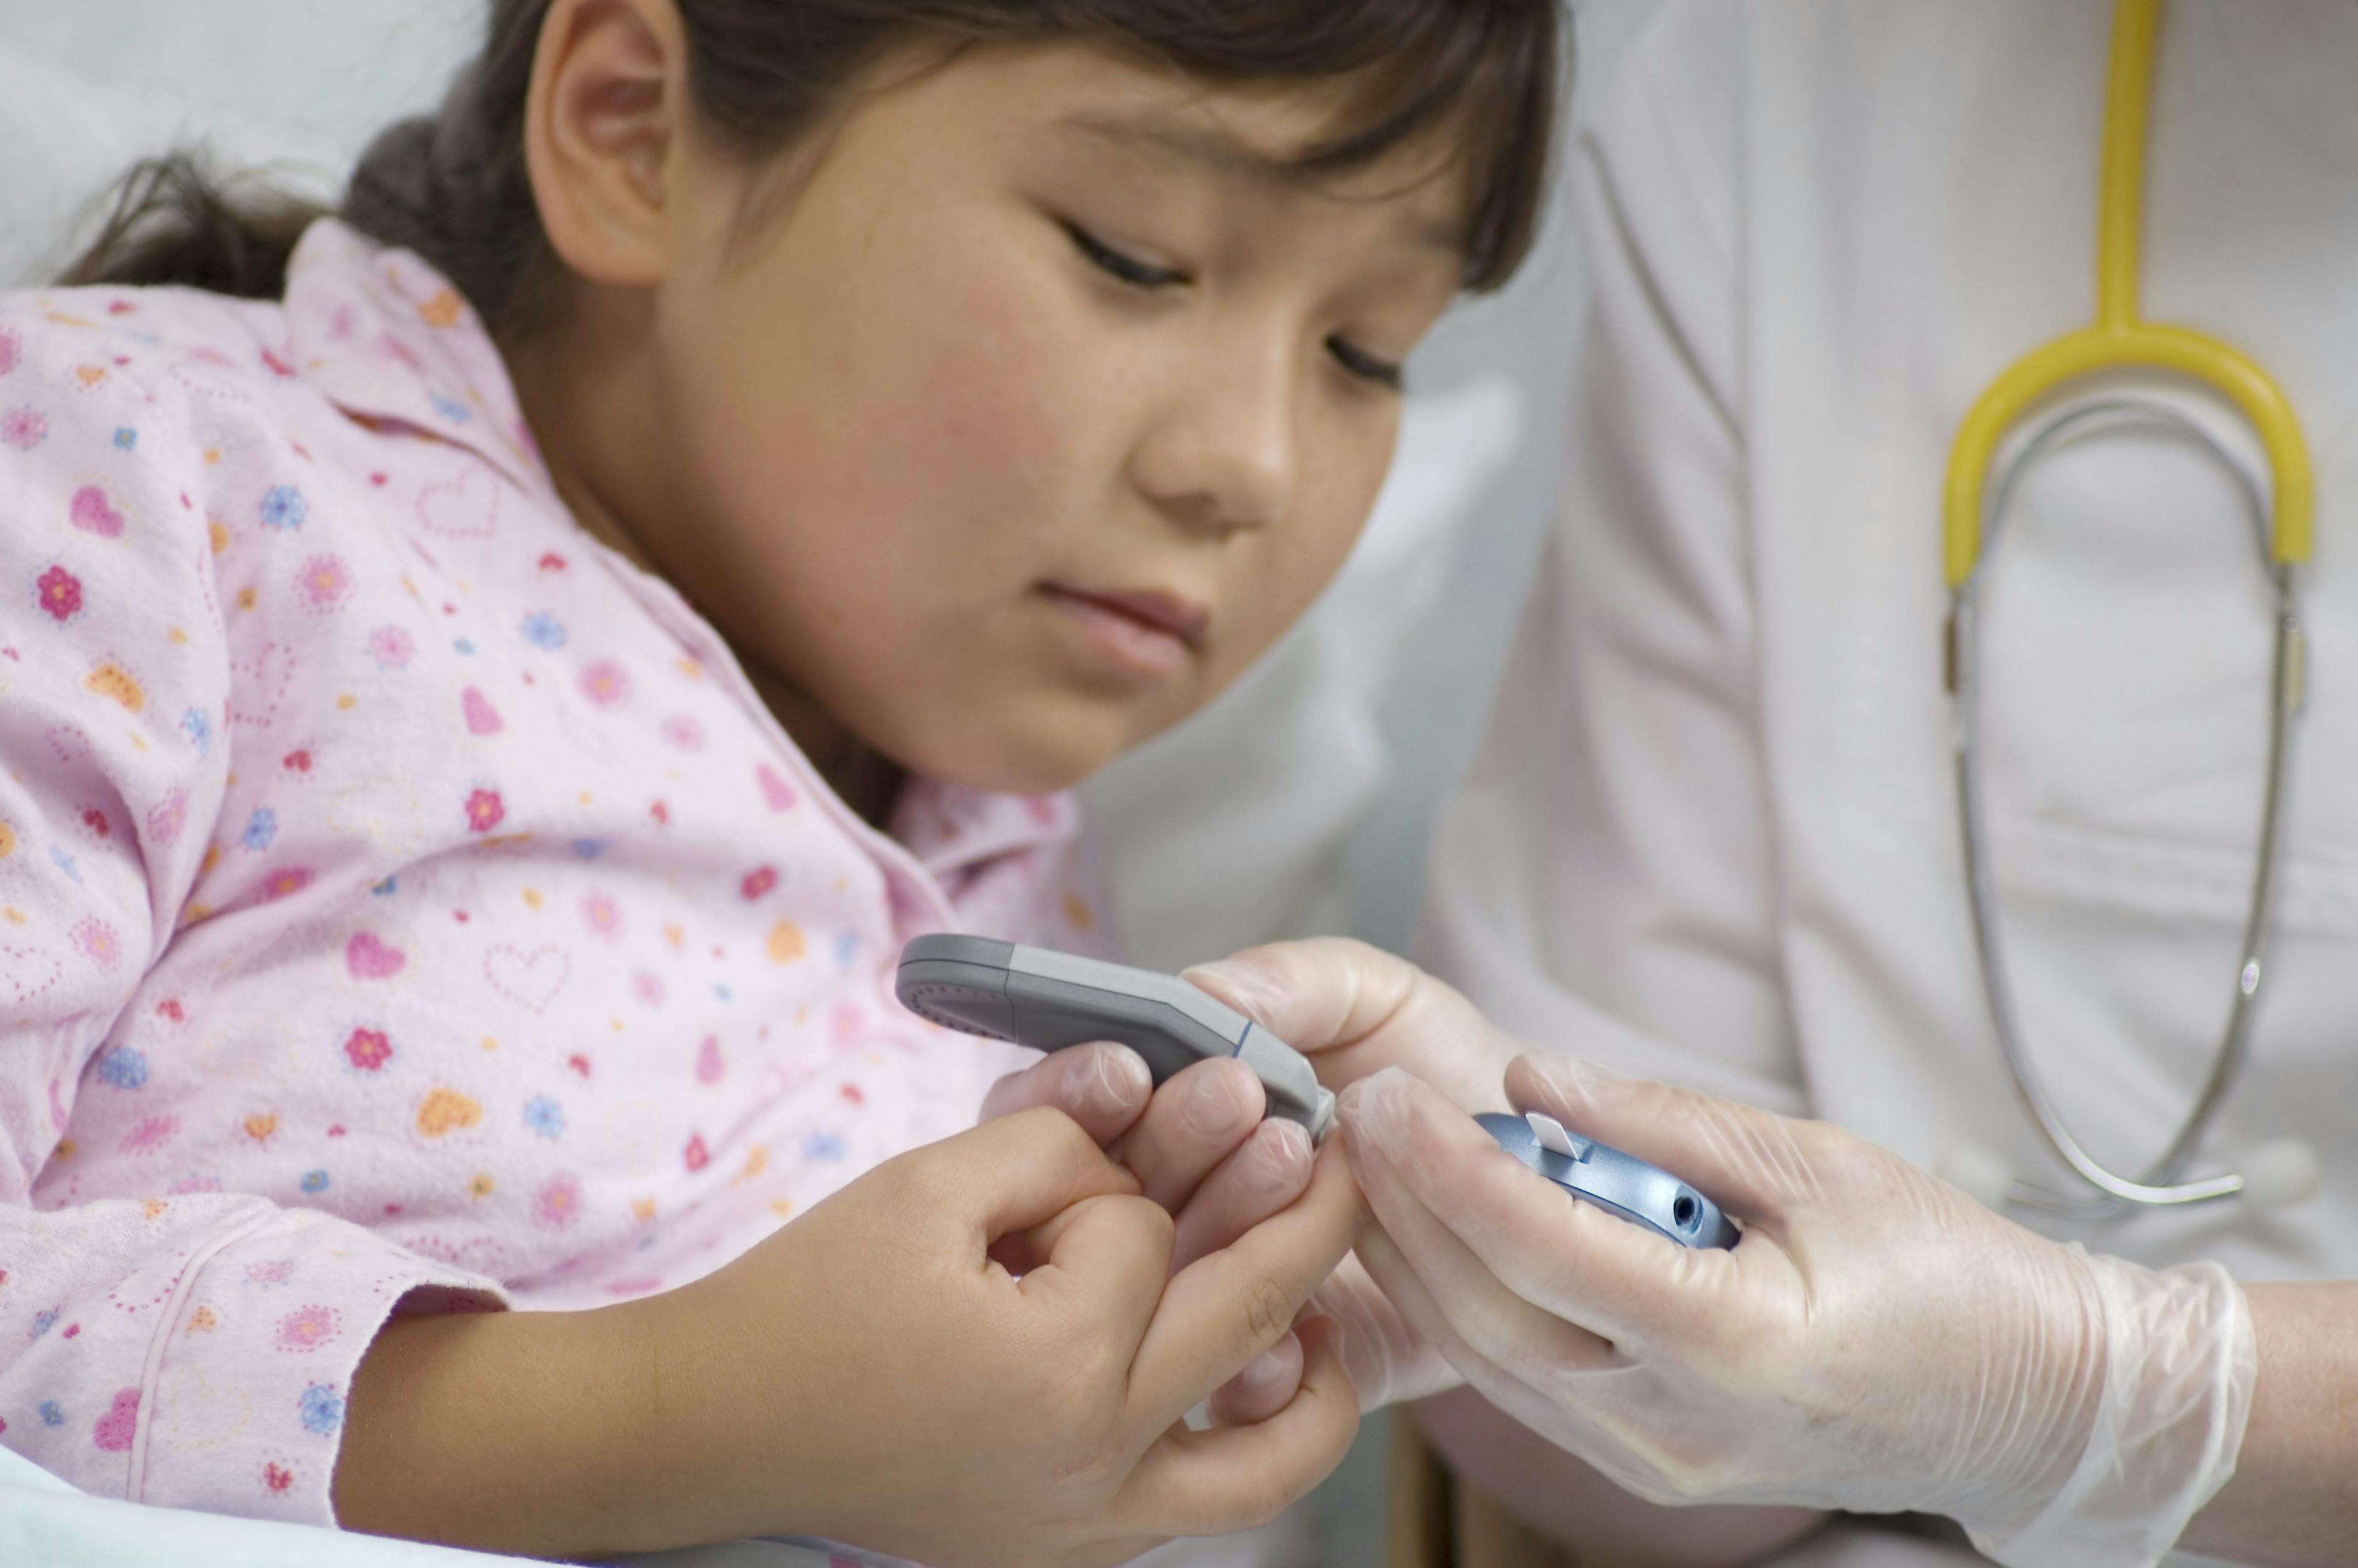 The future of pediatric type 2 diabetes